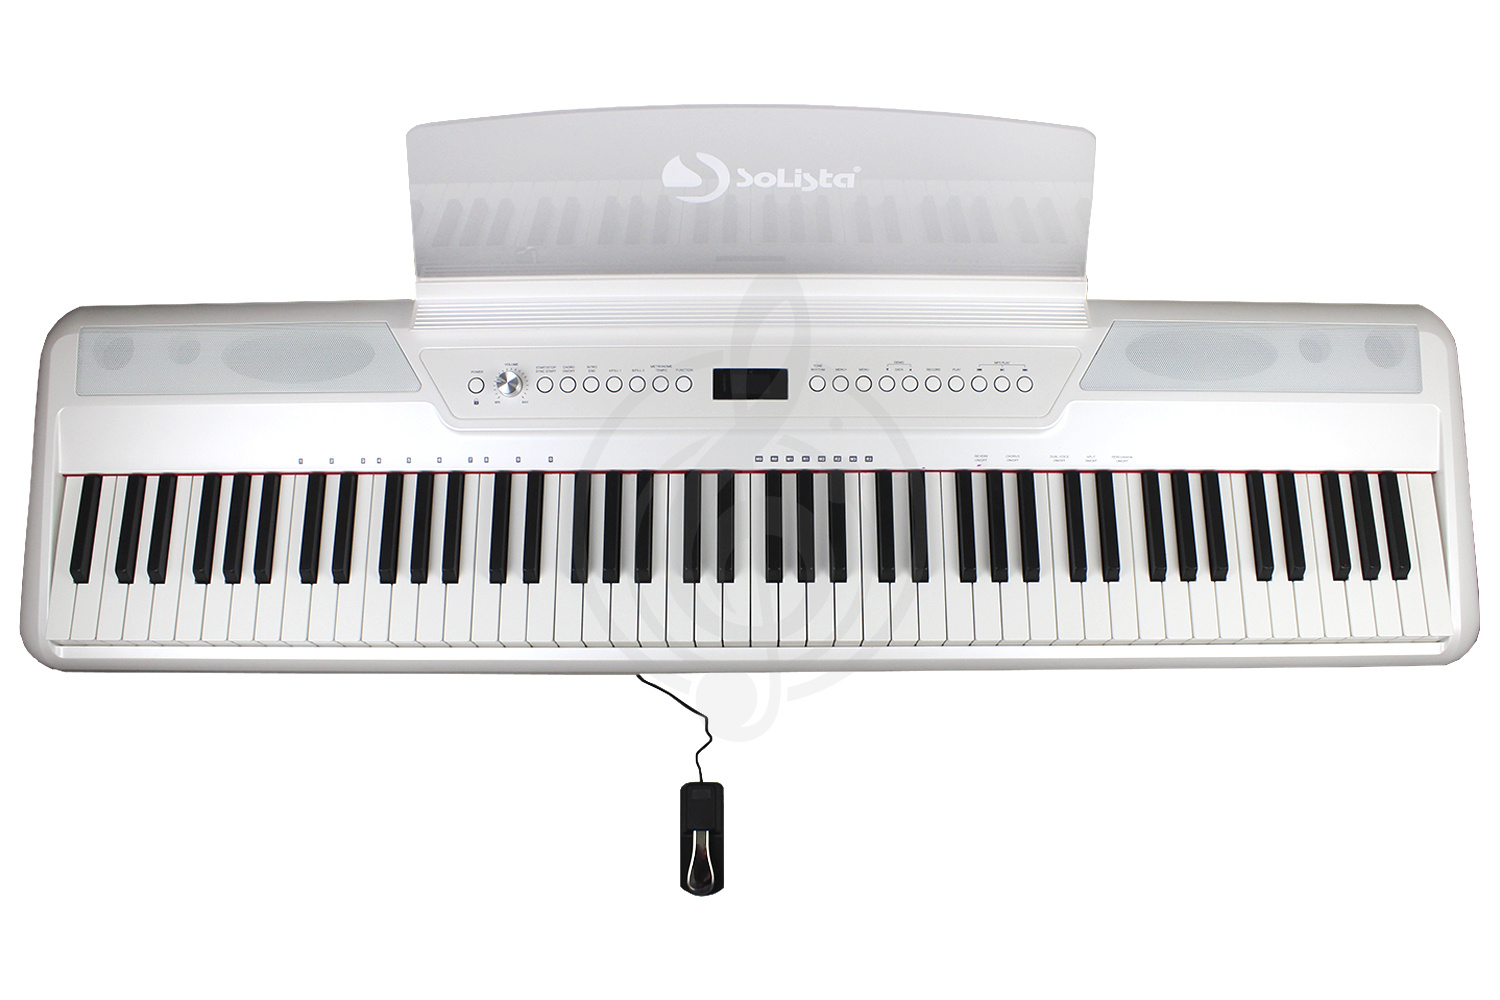 Цифровое пианино Цифровые пианино Solista SOLISTA p115 1 - Цифровое пианино p115 1 - фото 1